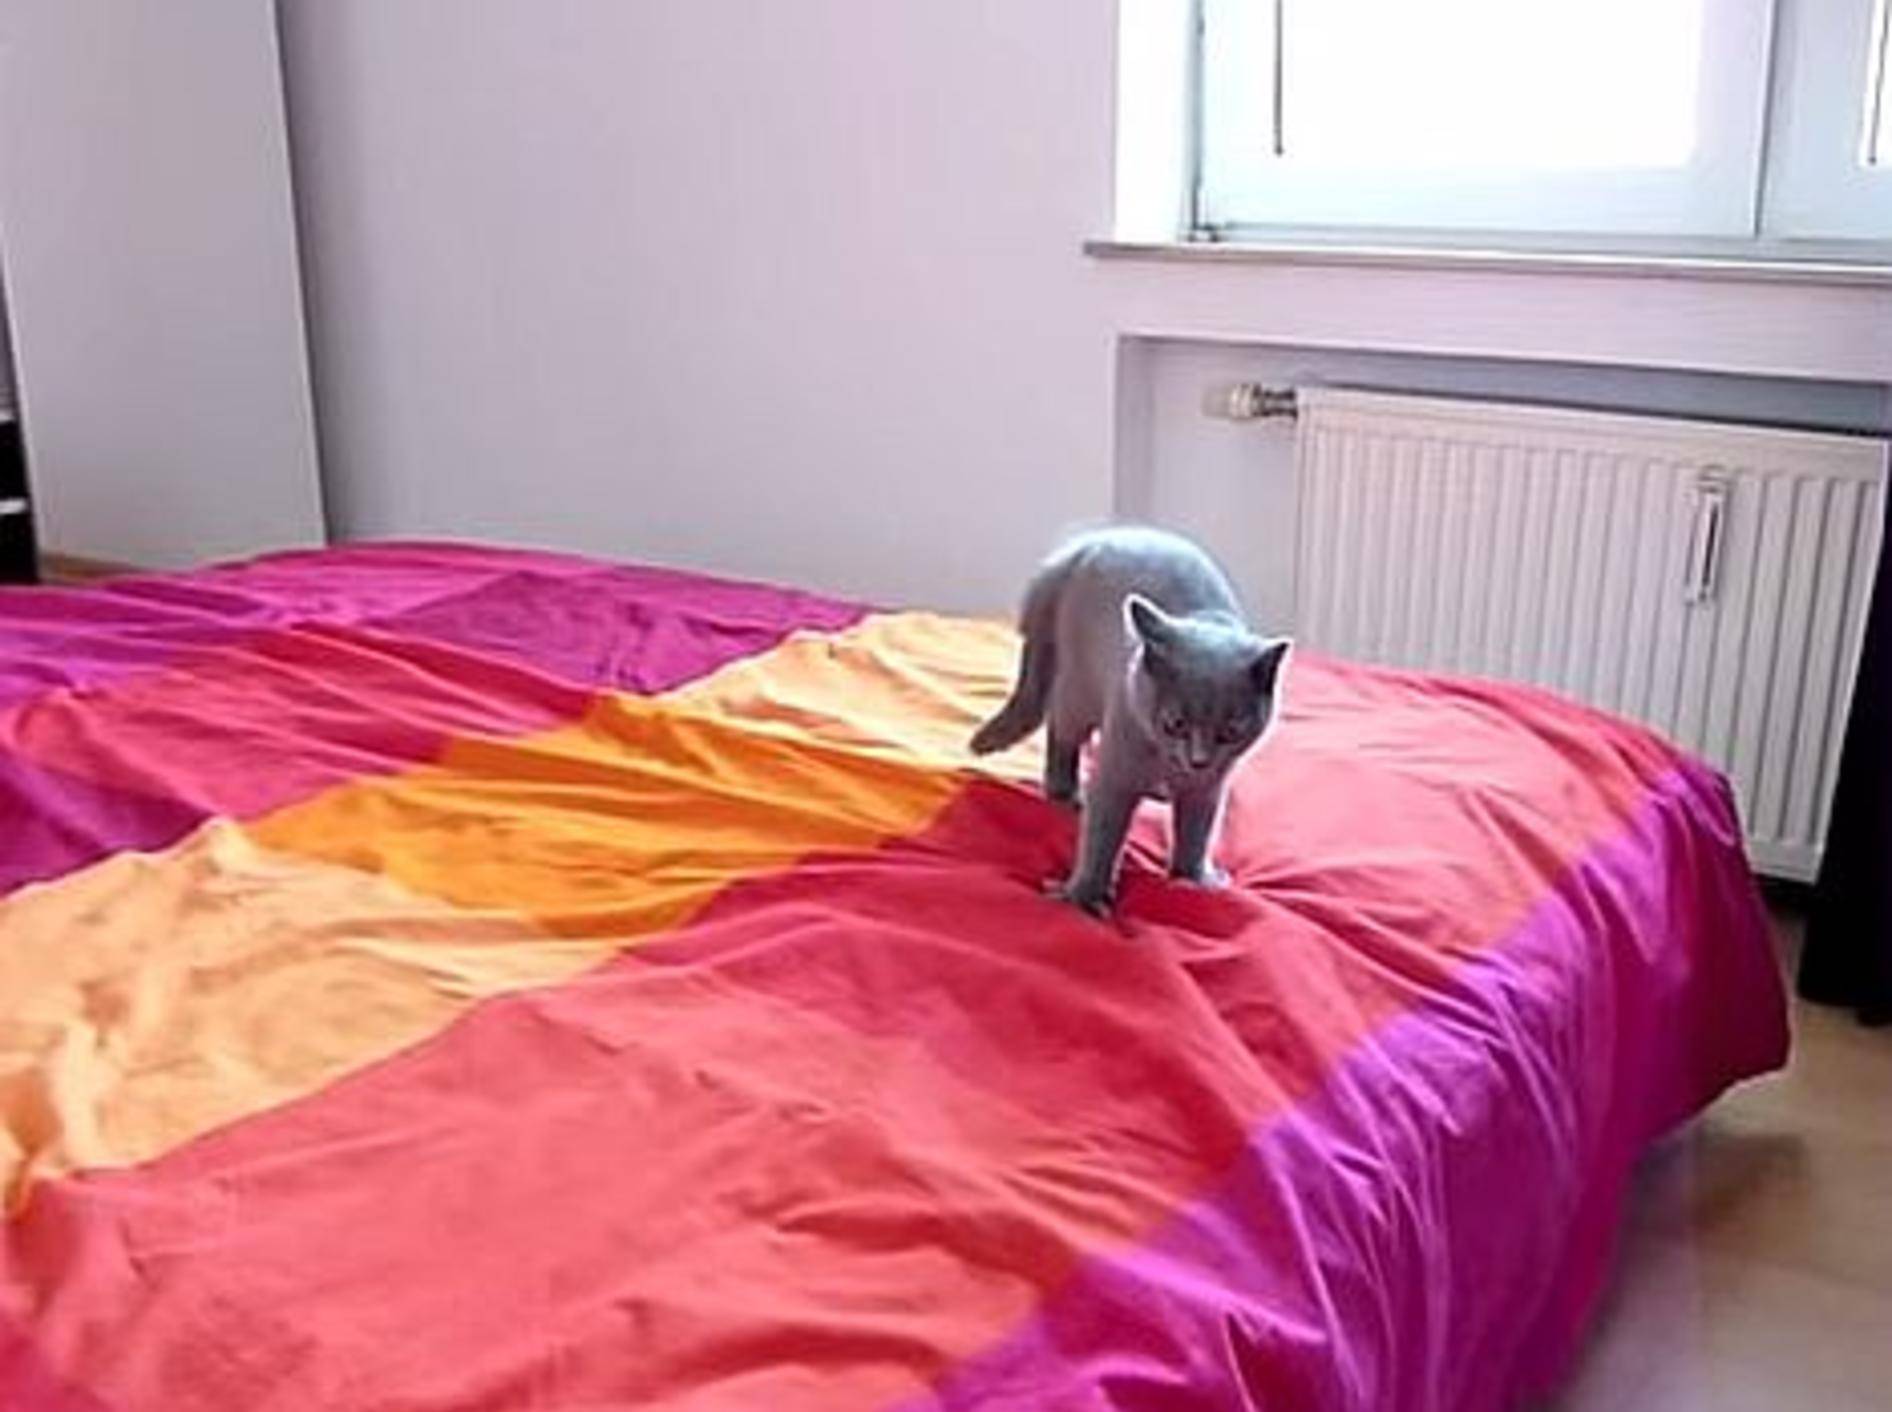 Katze präsentiert: Tobespaß auf frisch gemachtem Bett – Bild: Youtube / Rouven Kasten